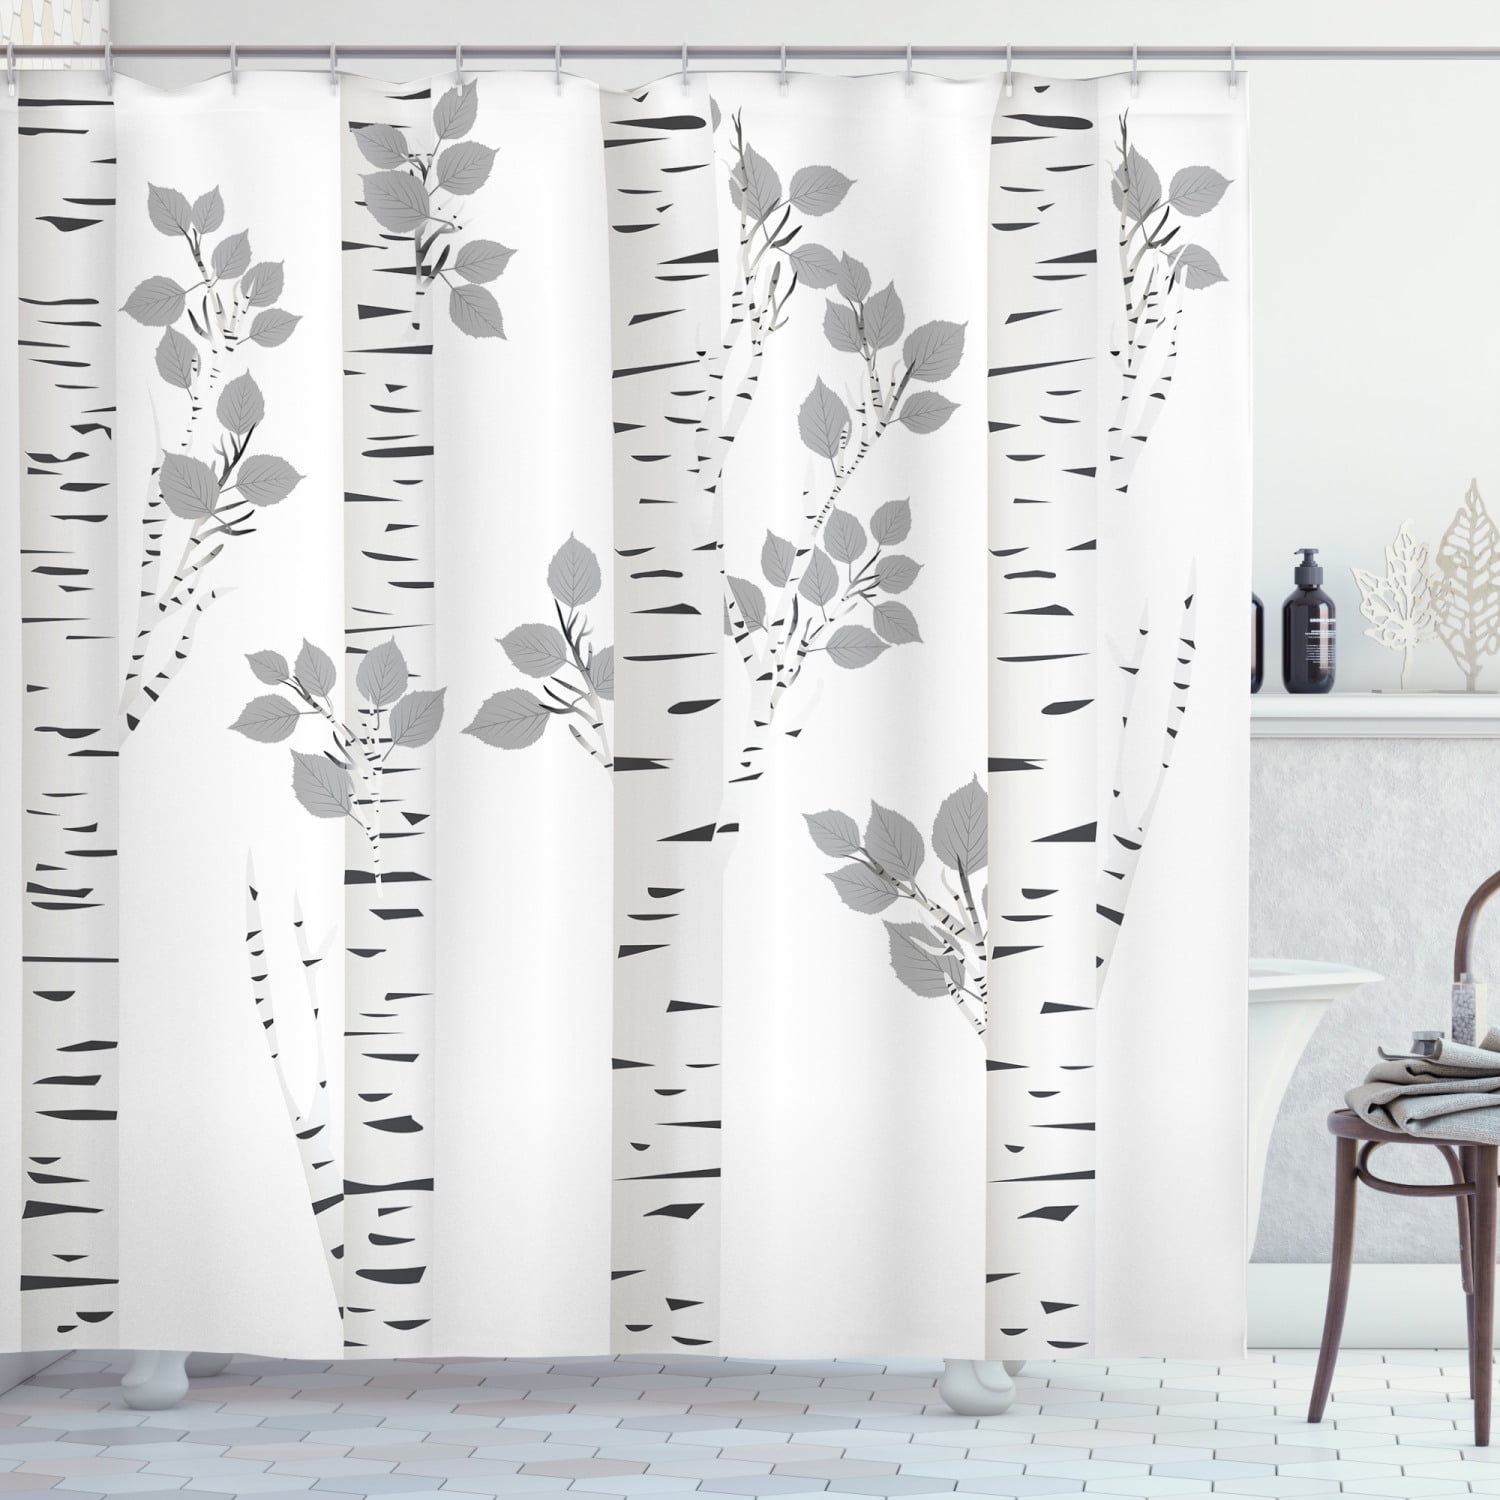 Misty and autumn forest Shower Curtain Bathroom Decor Fabric & 12hooks 71" 